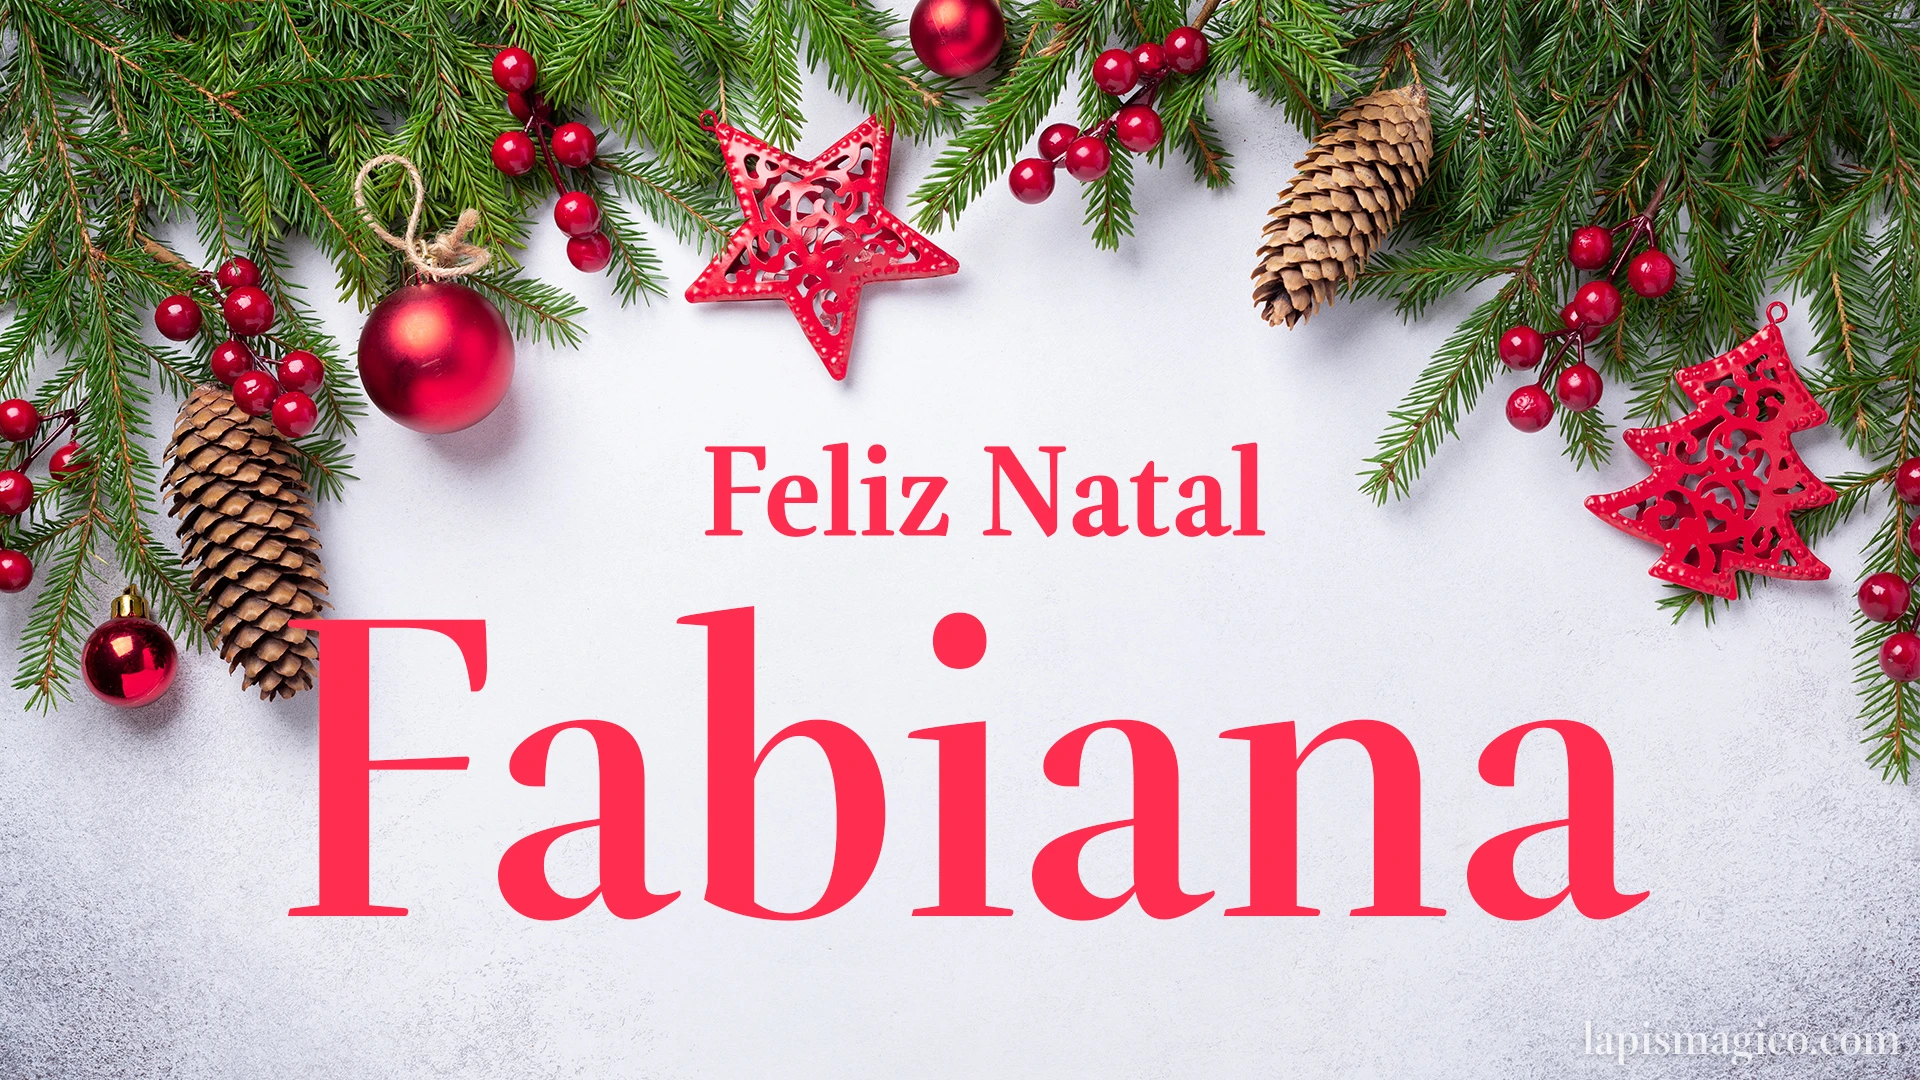 Oh Fabiana, cinco postais de Feliz Natal Postal com o teu nome